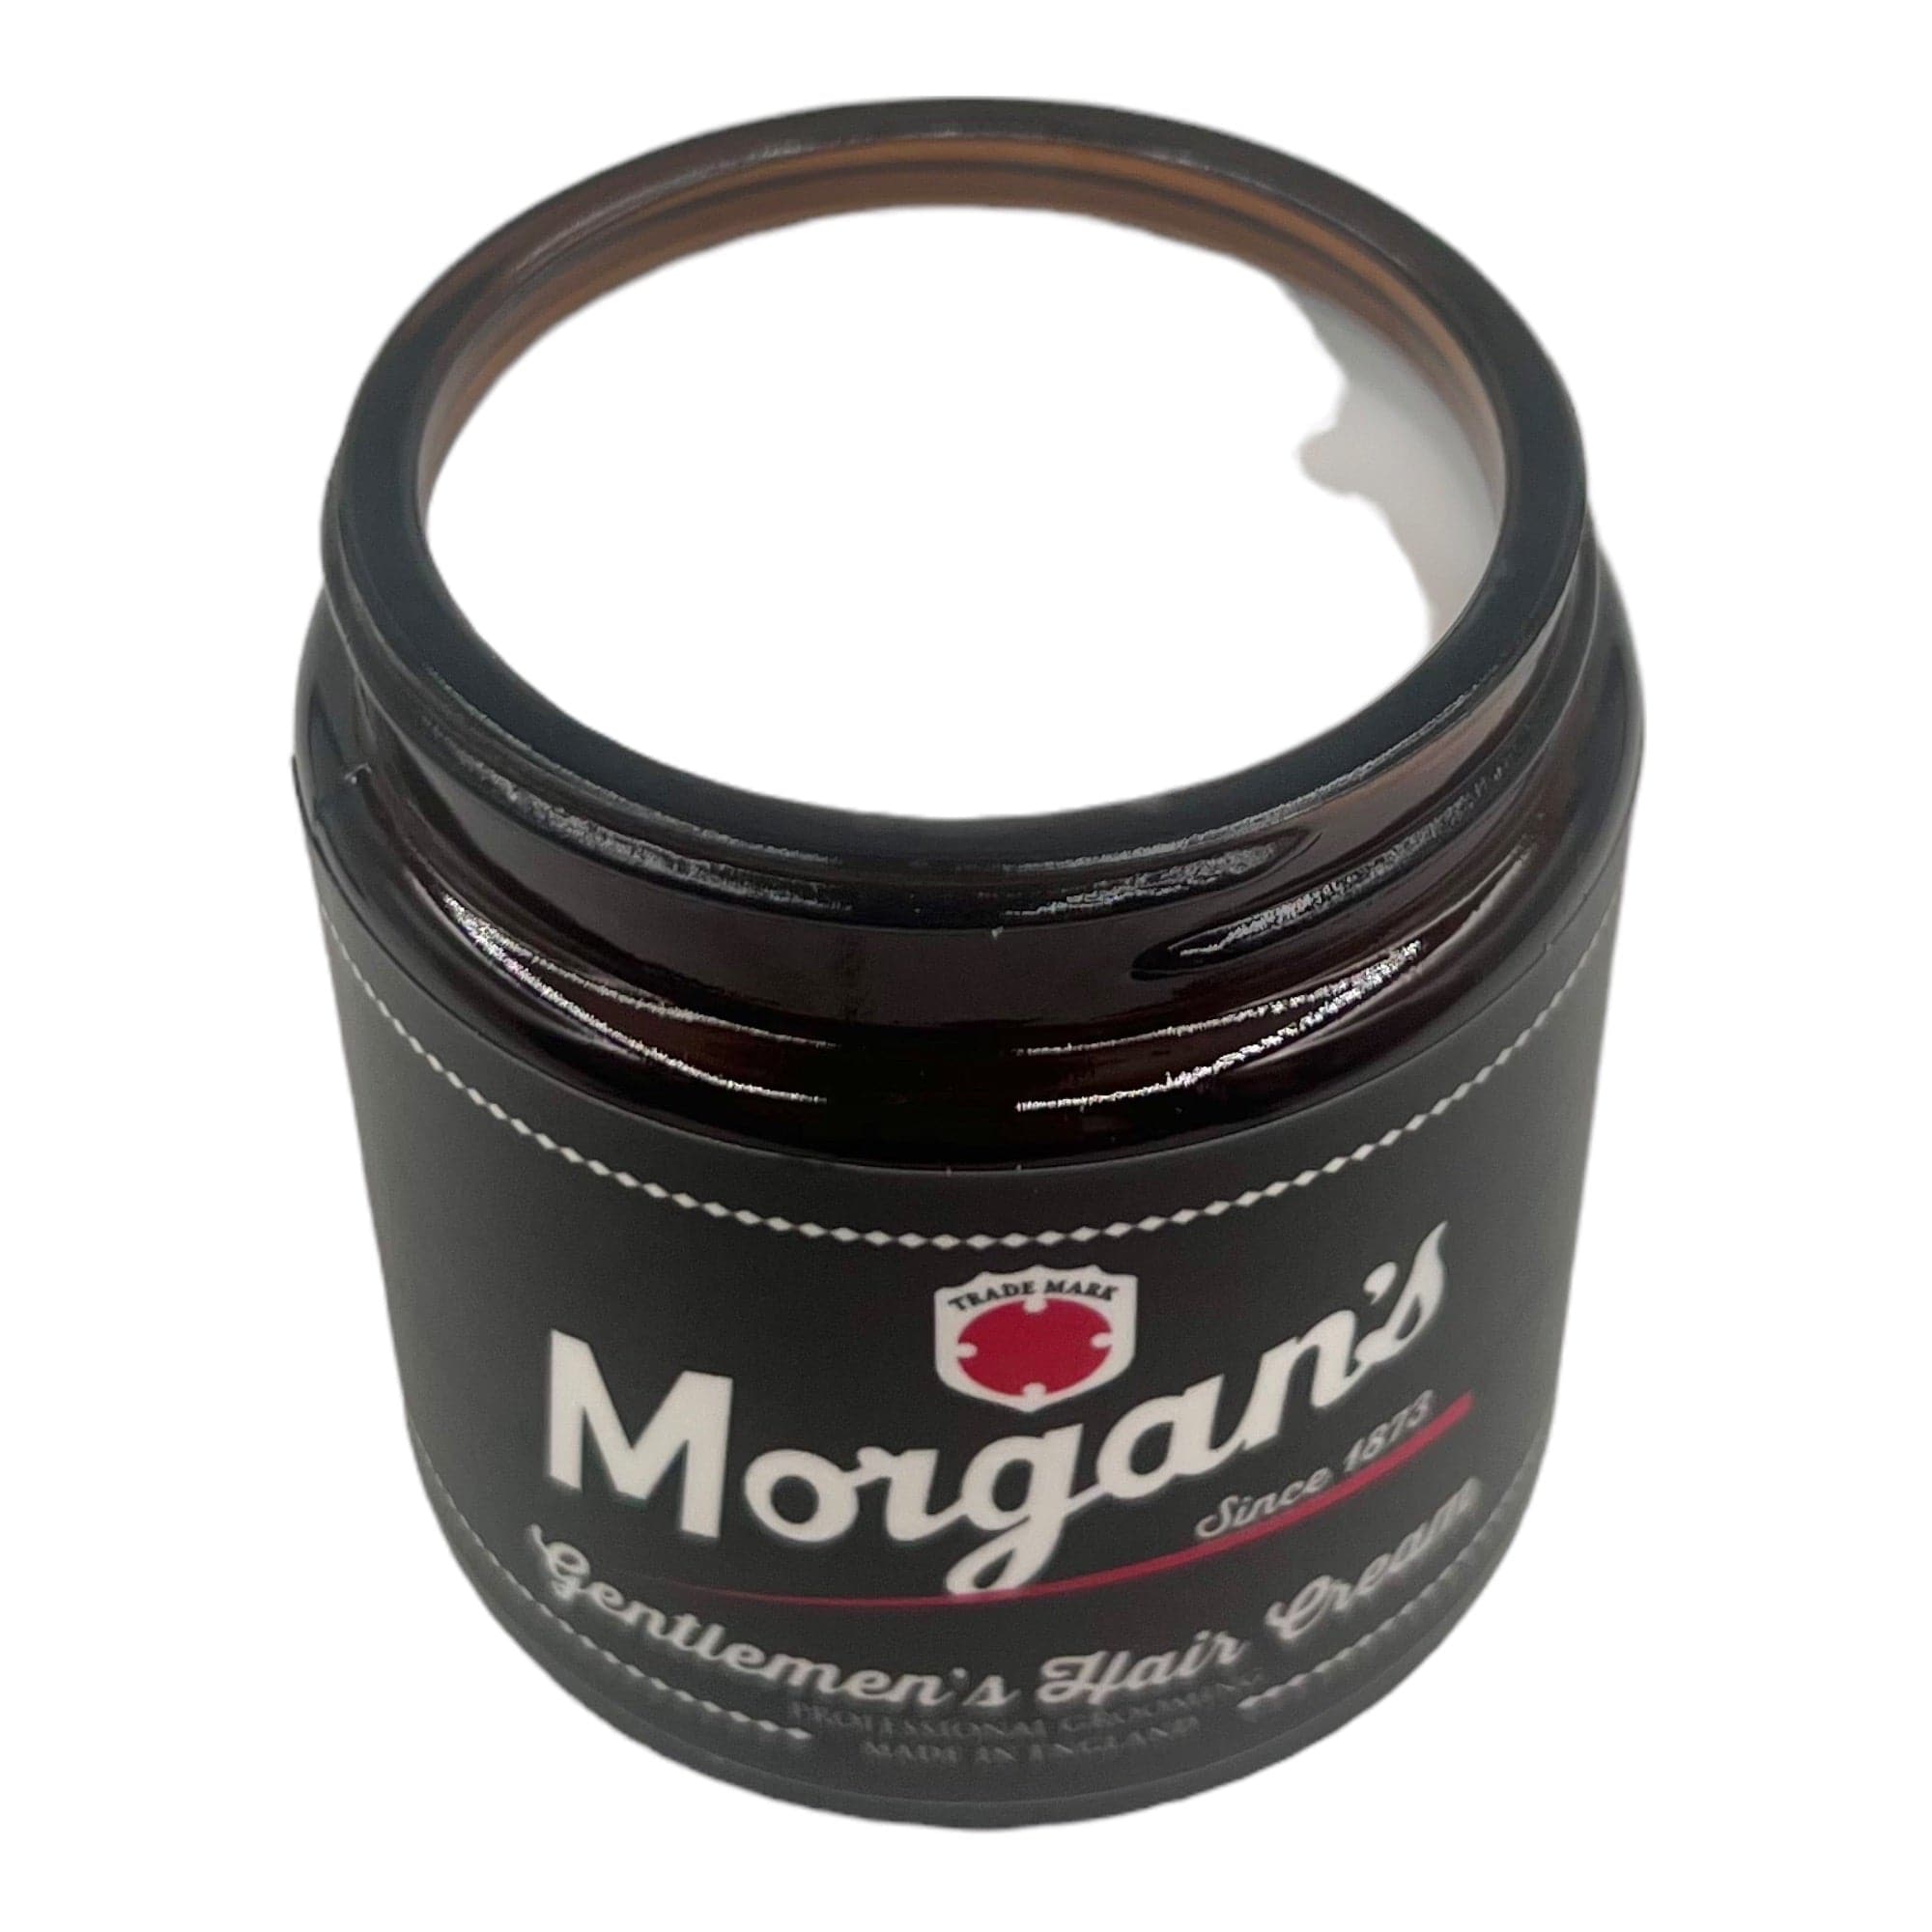 Morgan's - Gentlement's Hair Cream 120ml